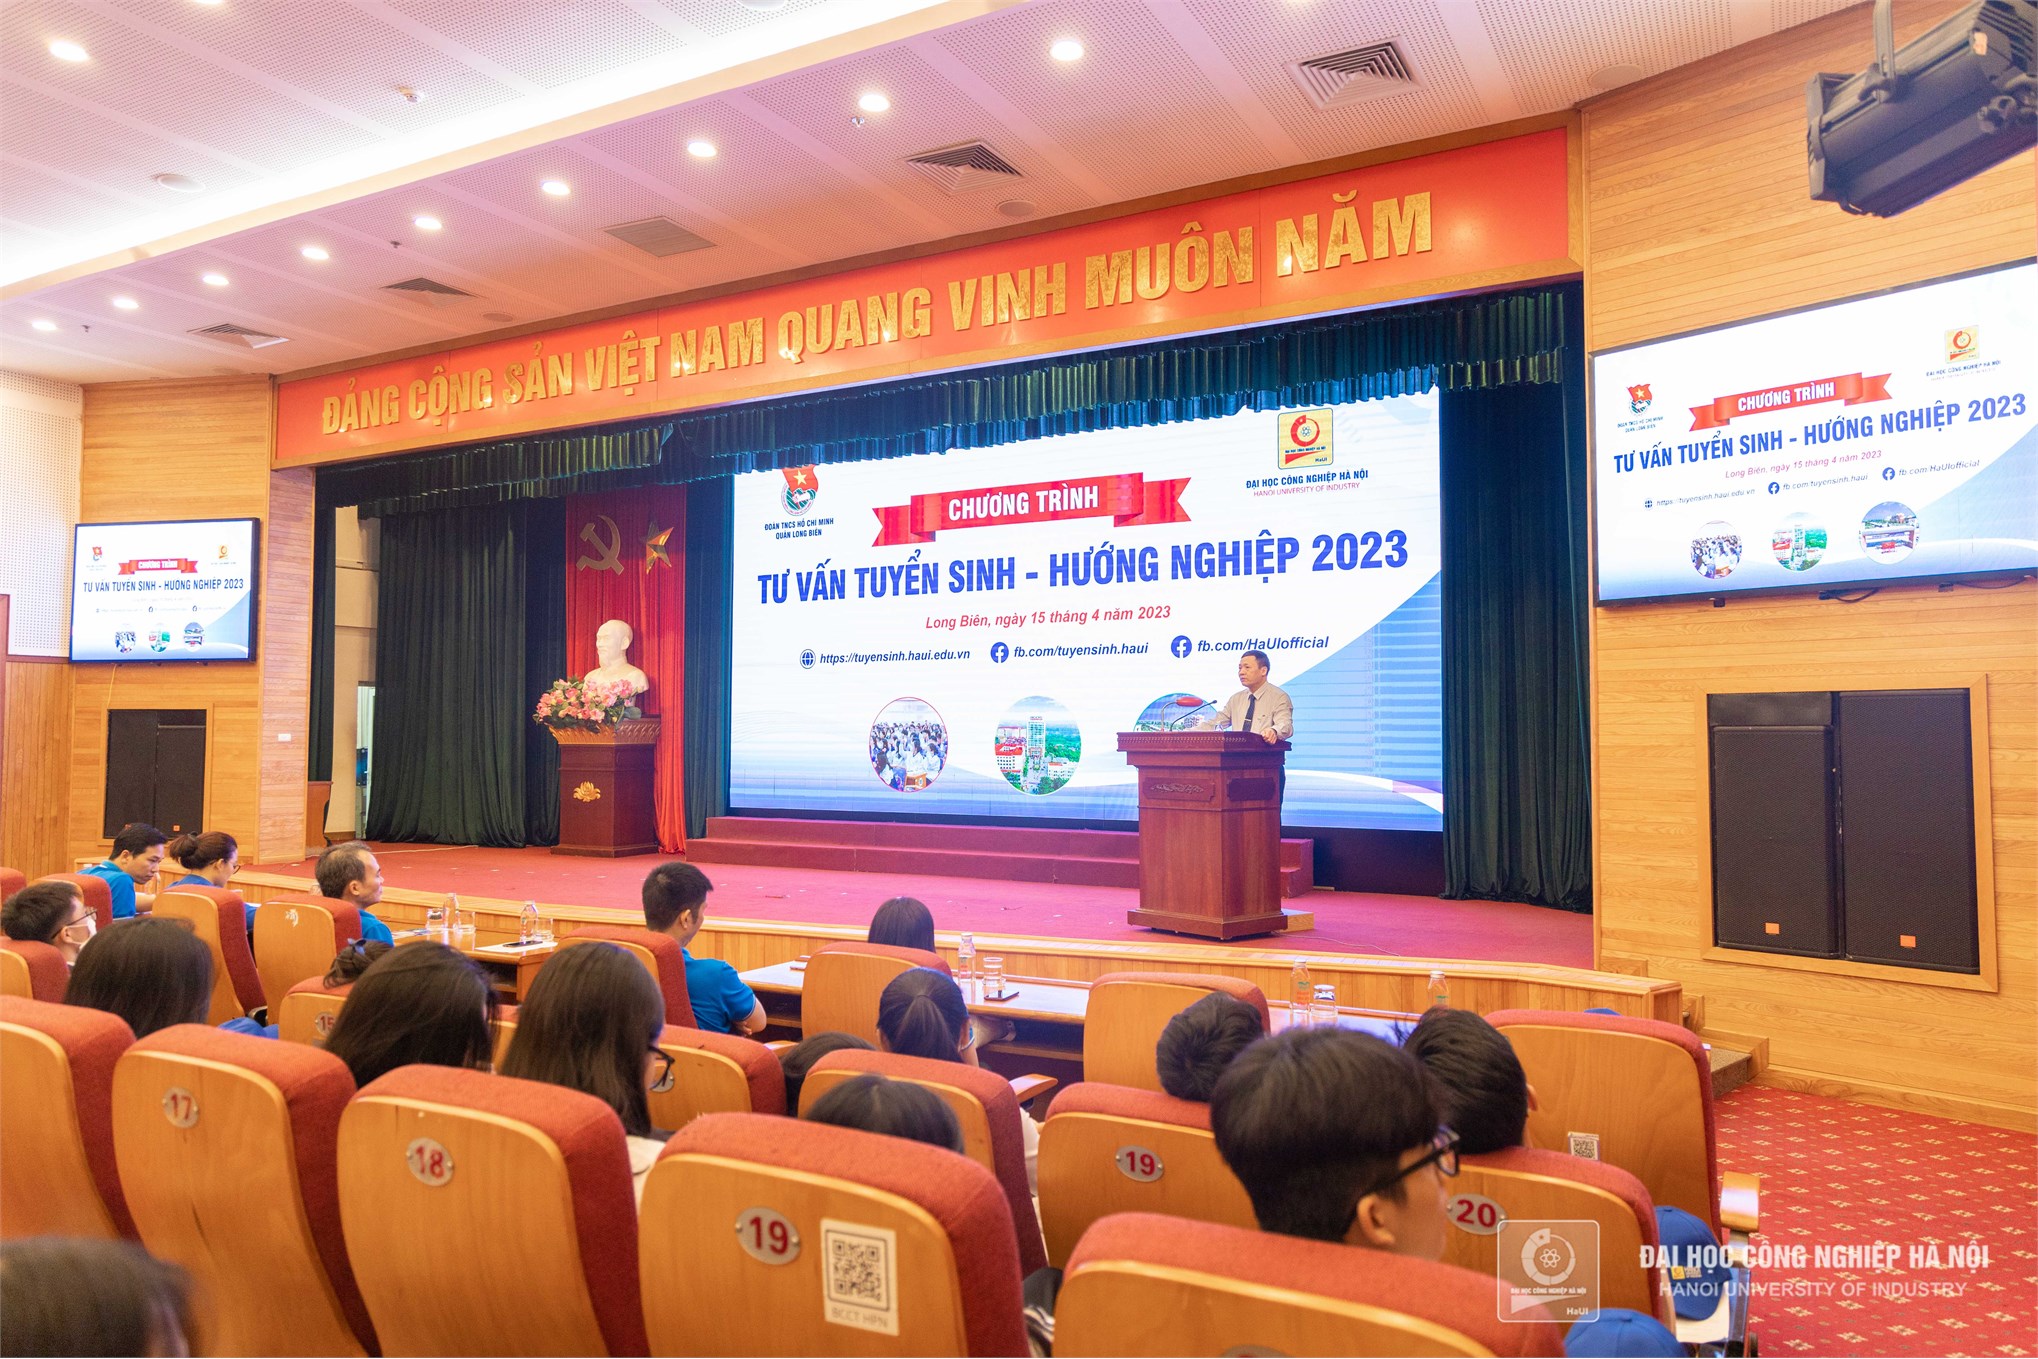 Đại học Công nghiệp Hà Nội tư vấn tuyển sinh, hướng nghiệp tại quận Long Biên, Hà Nội